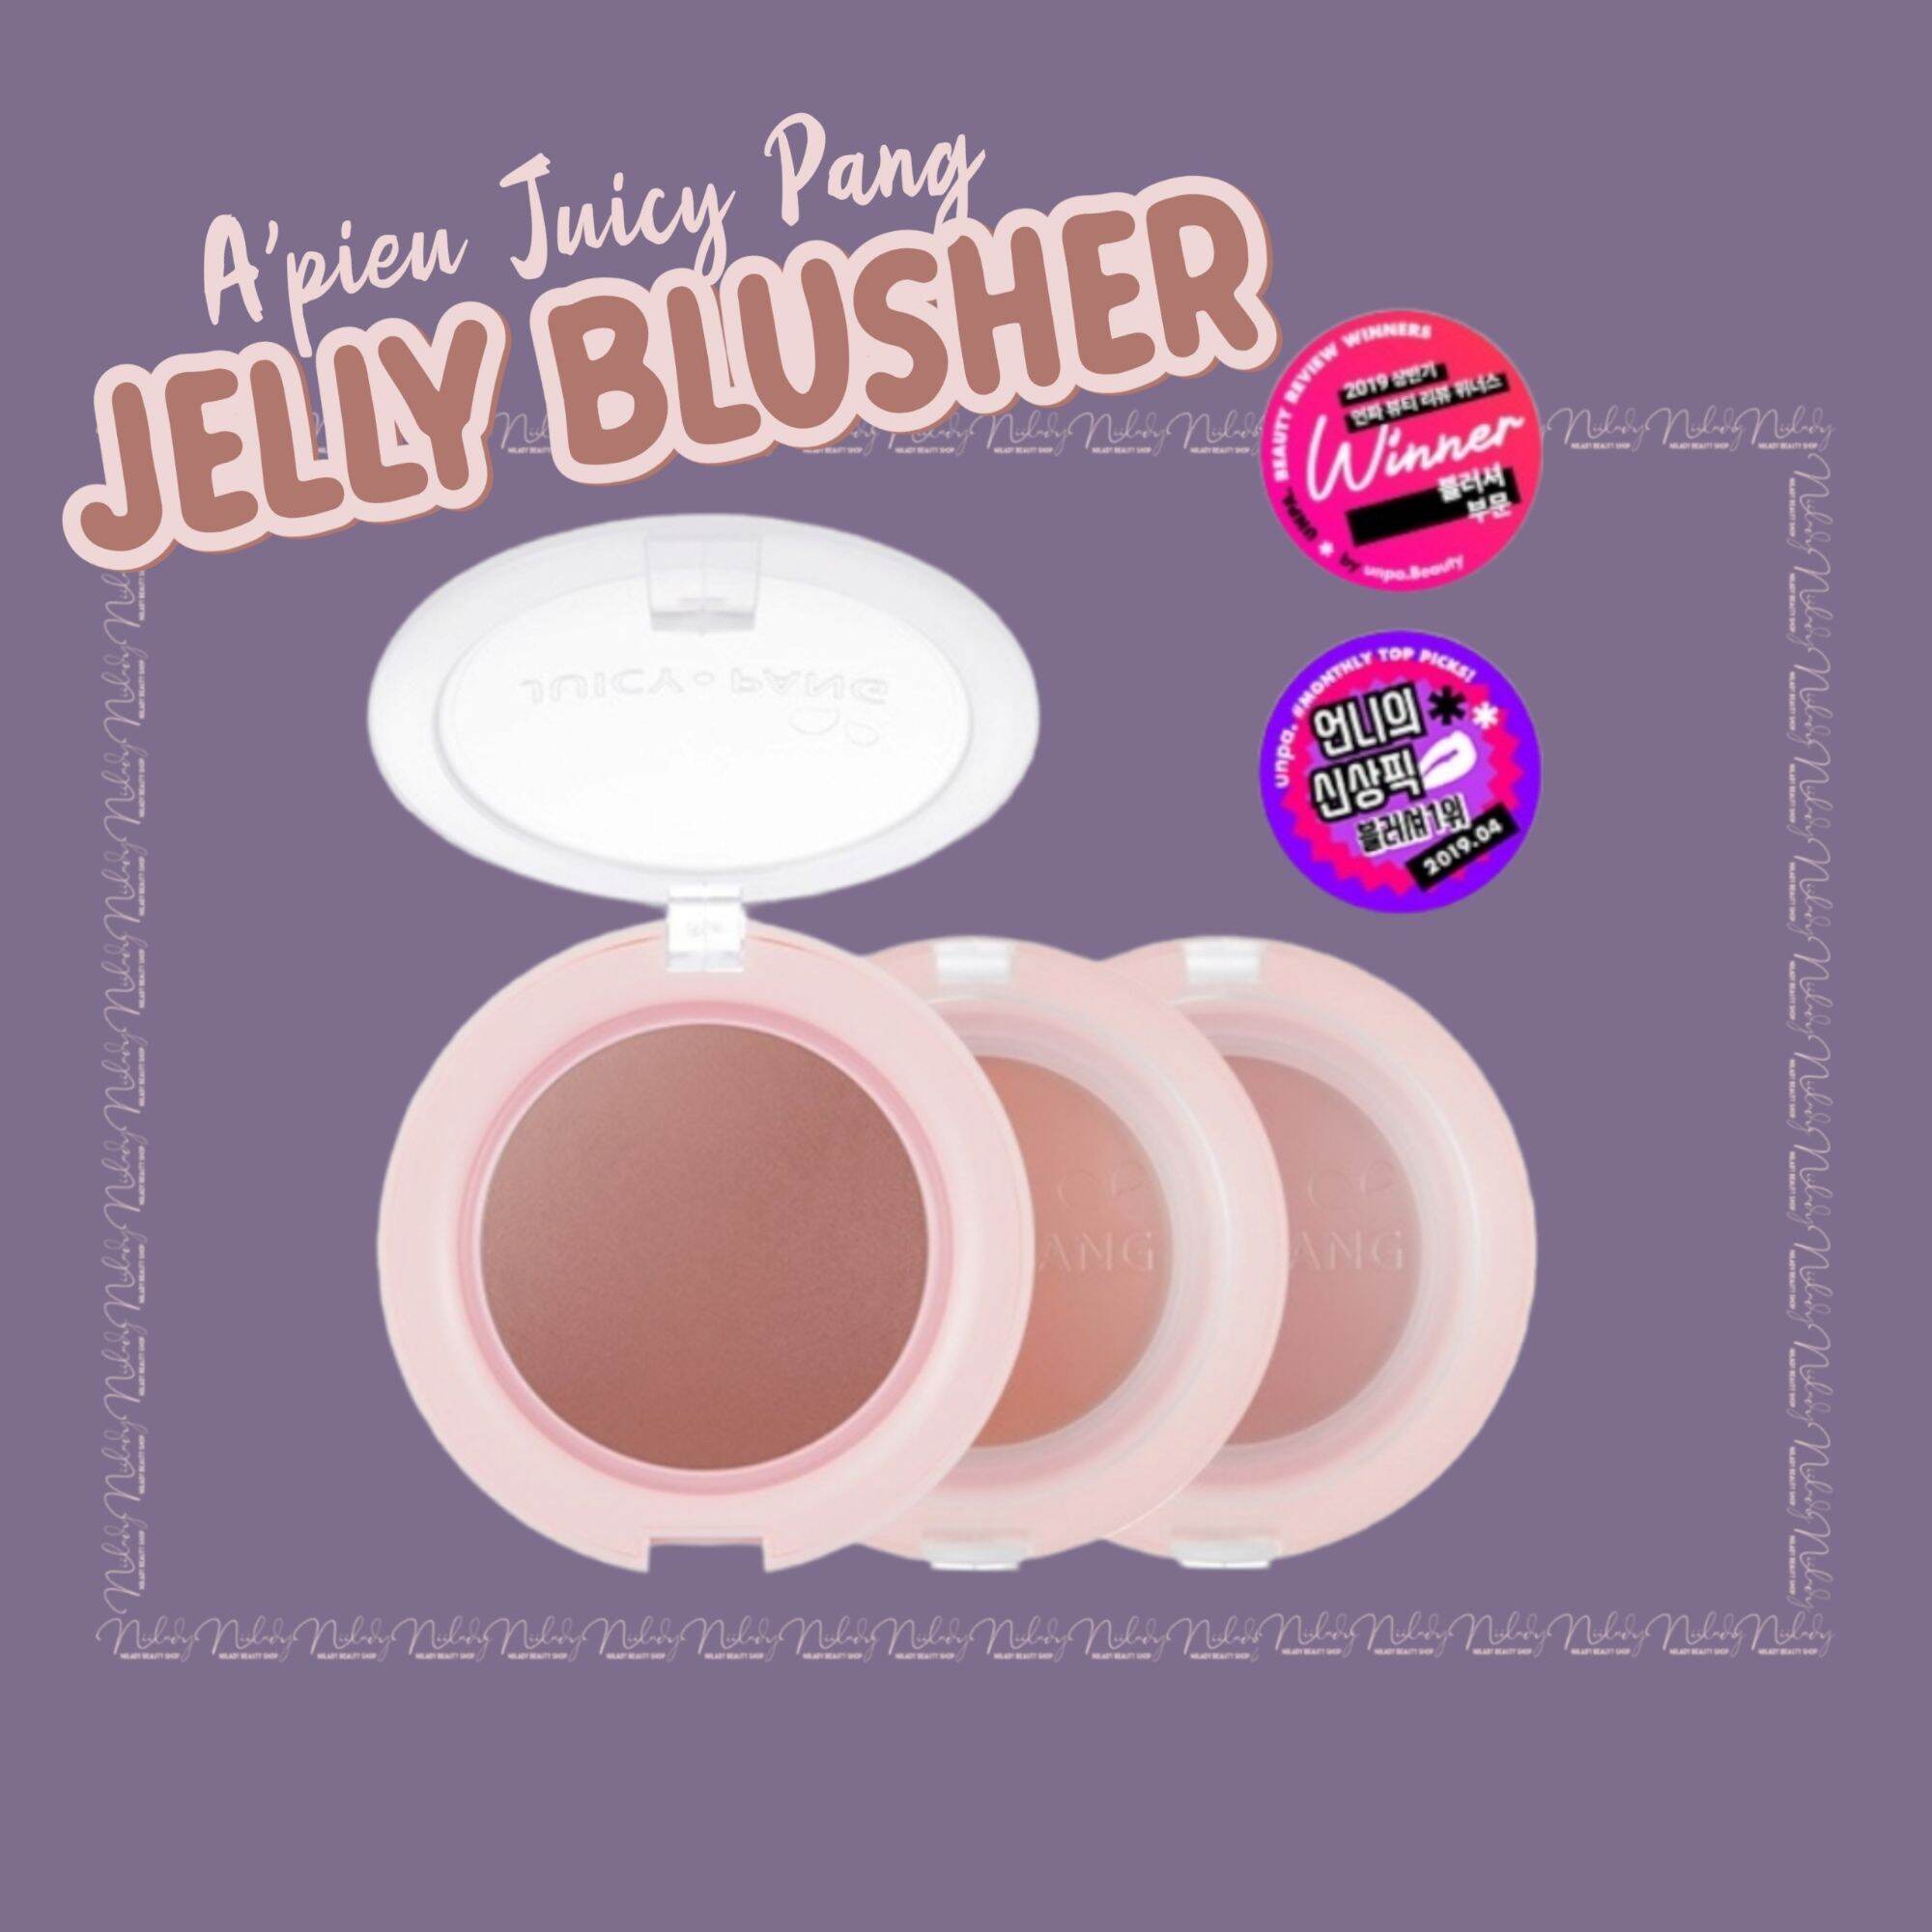 Má hồng A pieu Juicy Pang JELLY Blusher